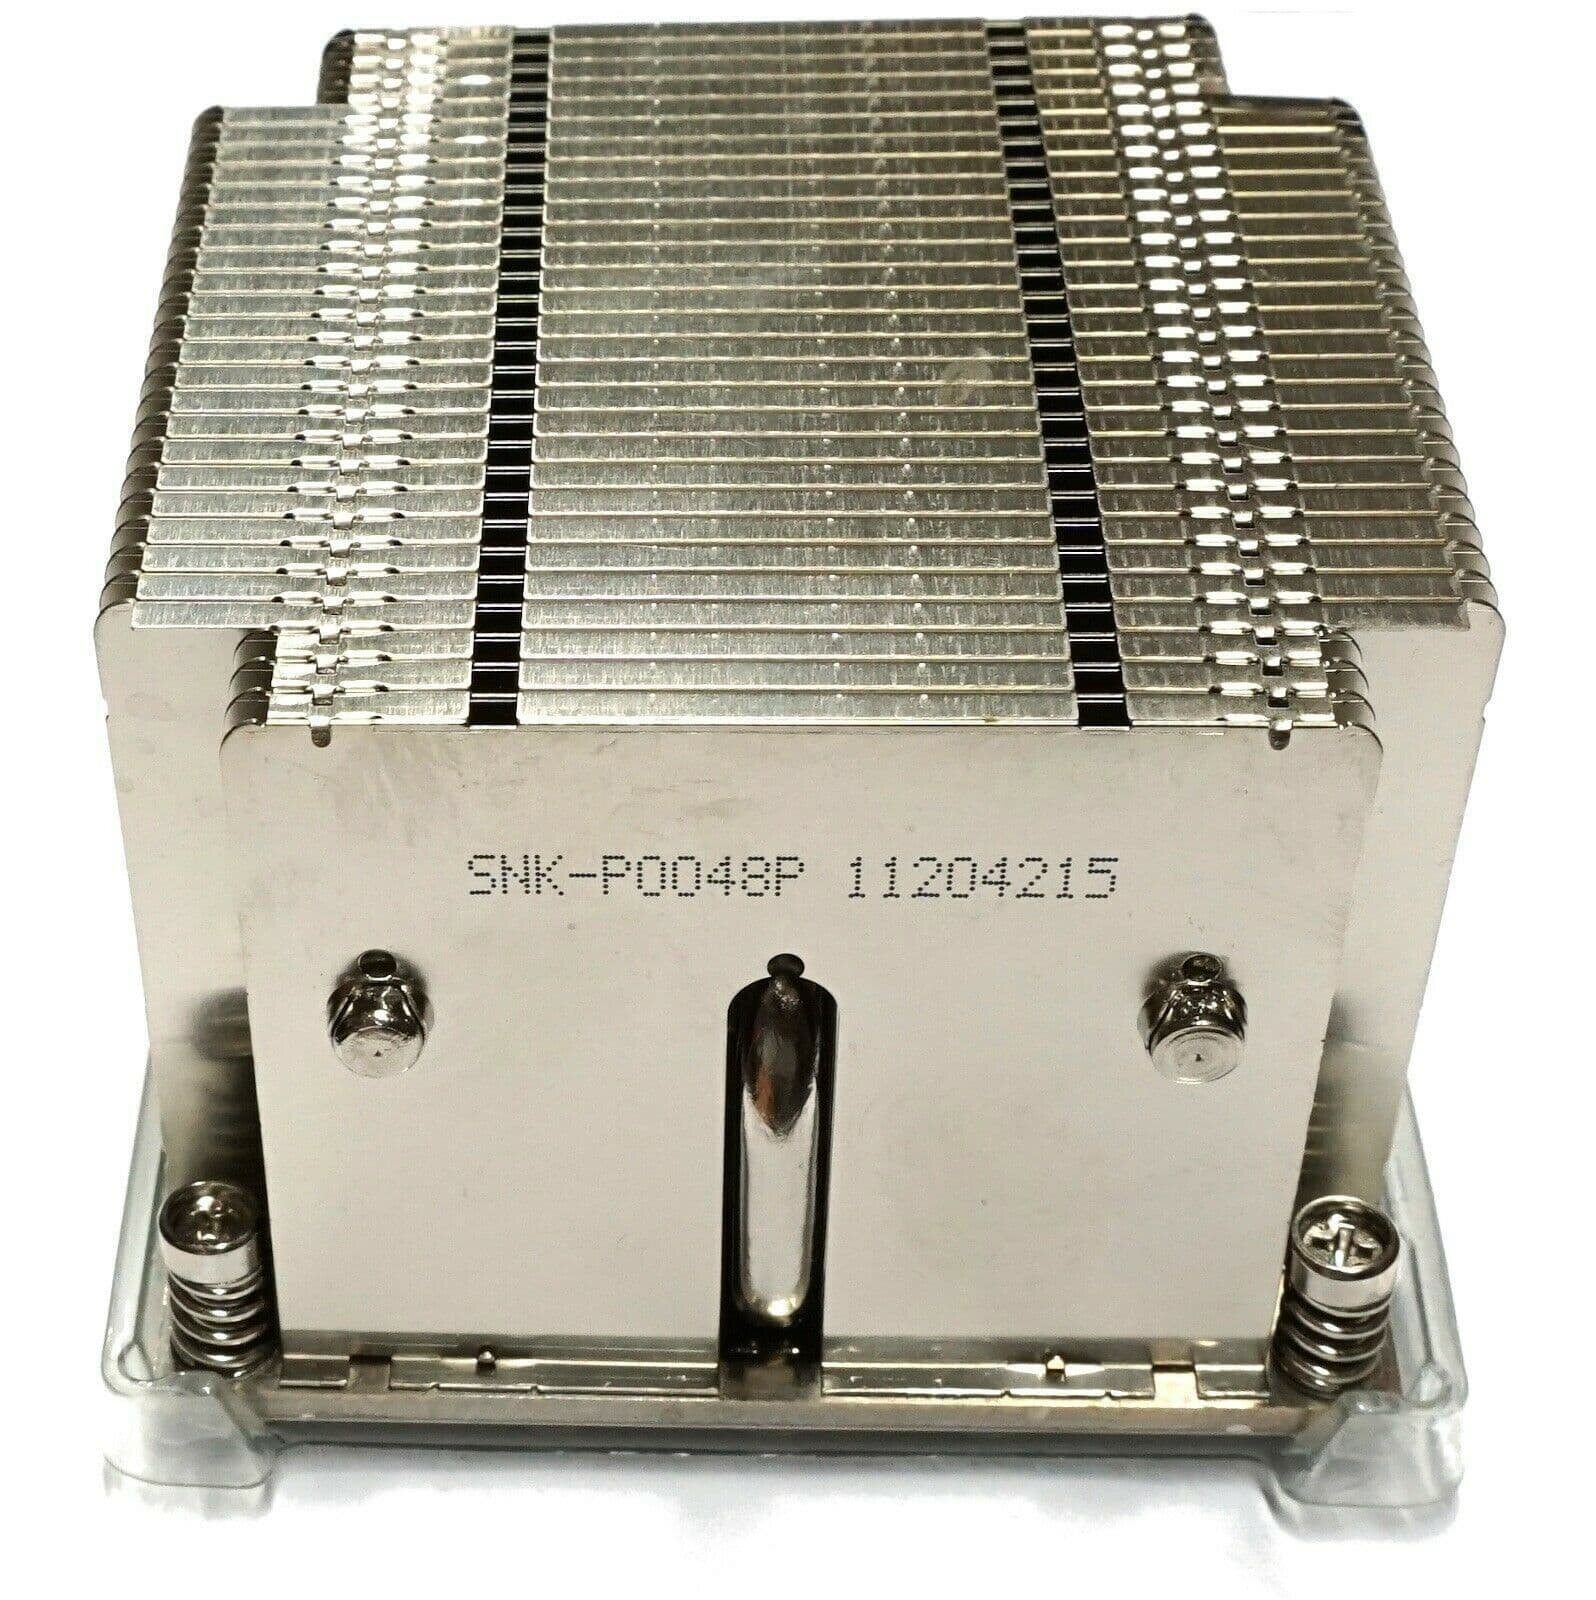 Система охлаждения Supermicro SNK-P0048P 2U LGA2011/LGA2066, AMD/X8/X9/X10 Gen., Square ILM (OEM)